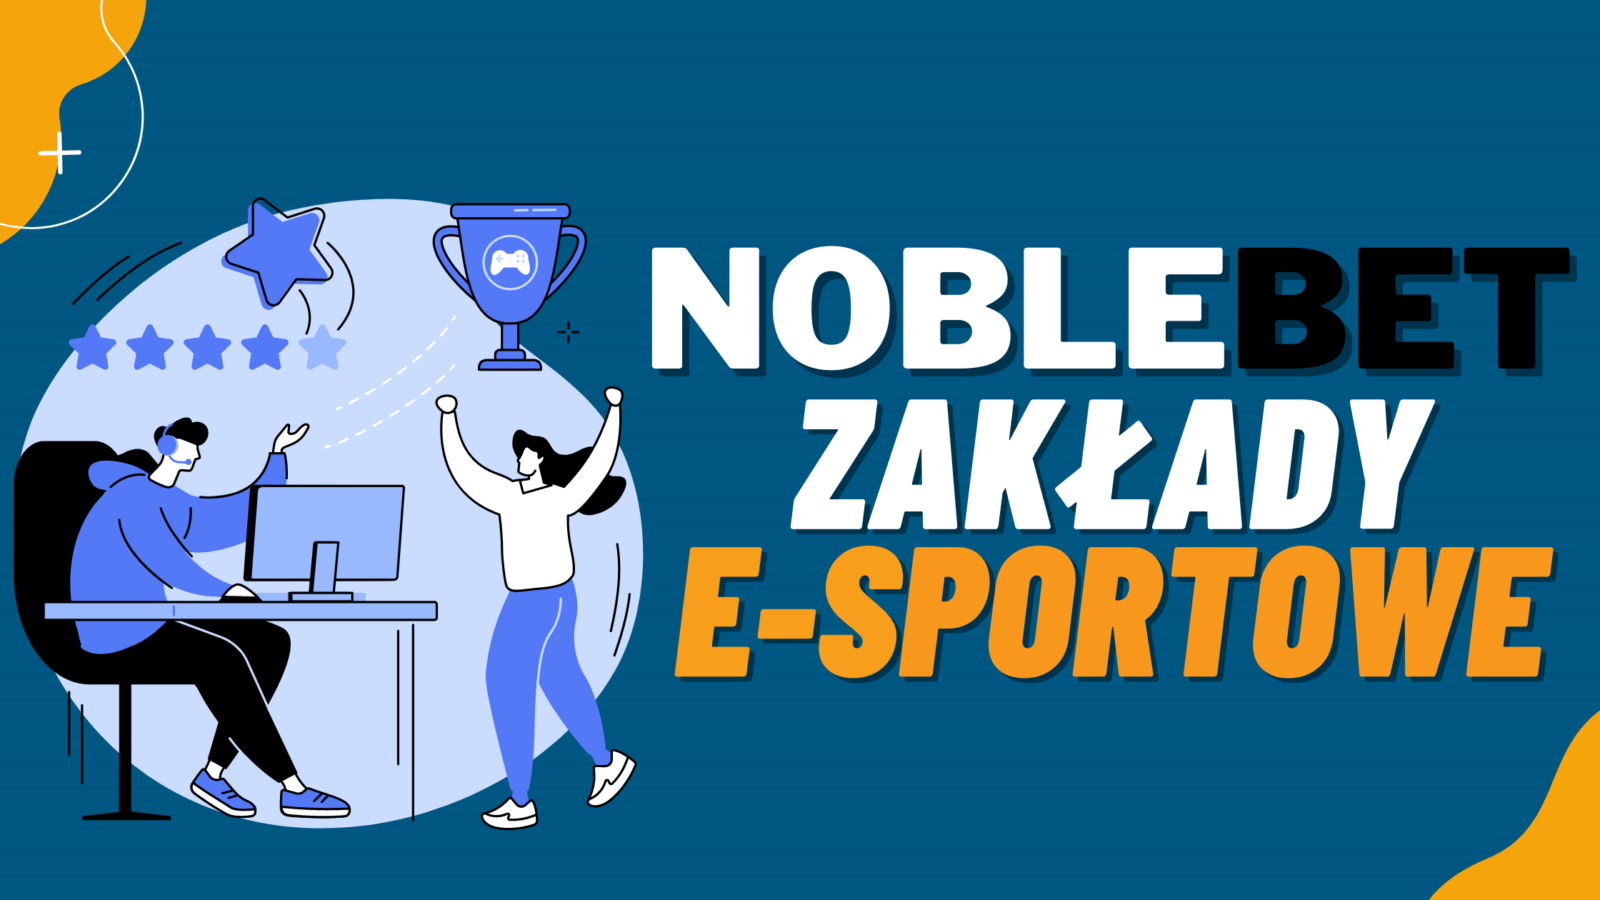 Legalny bukmacher NobleBet zakłady e-sportowe